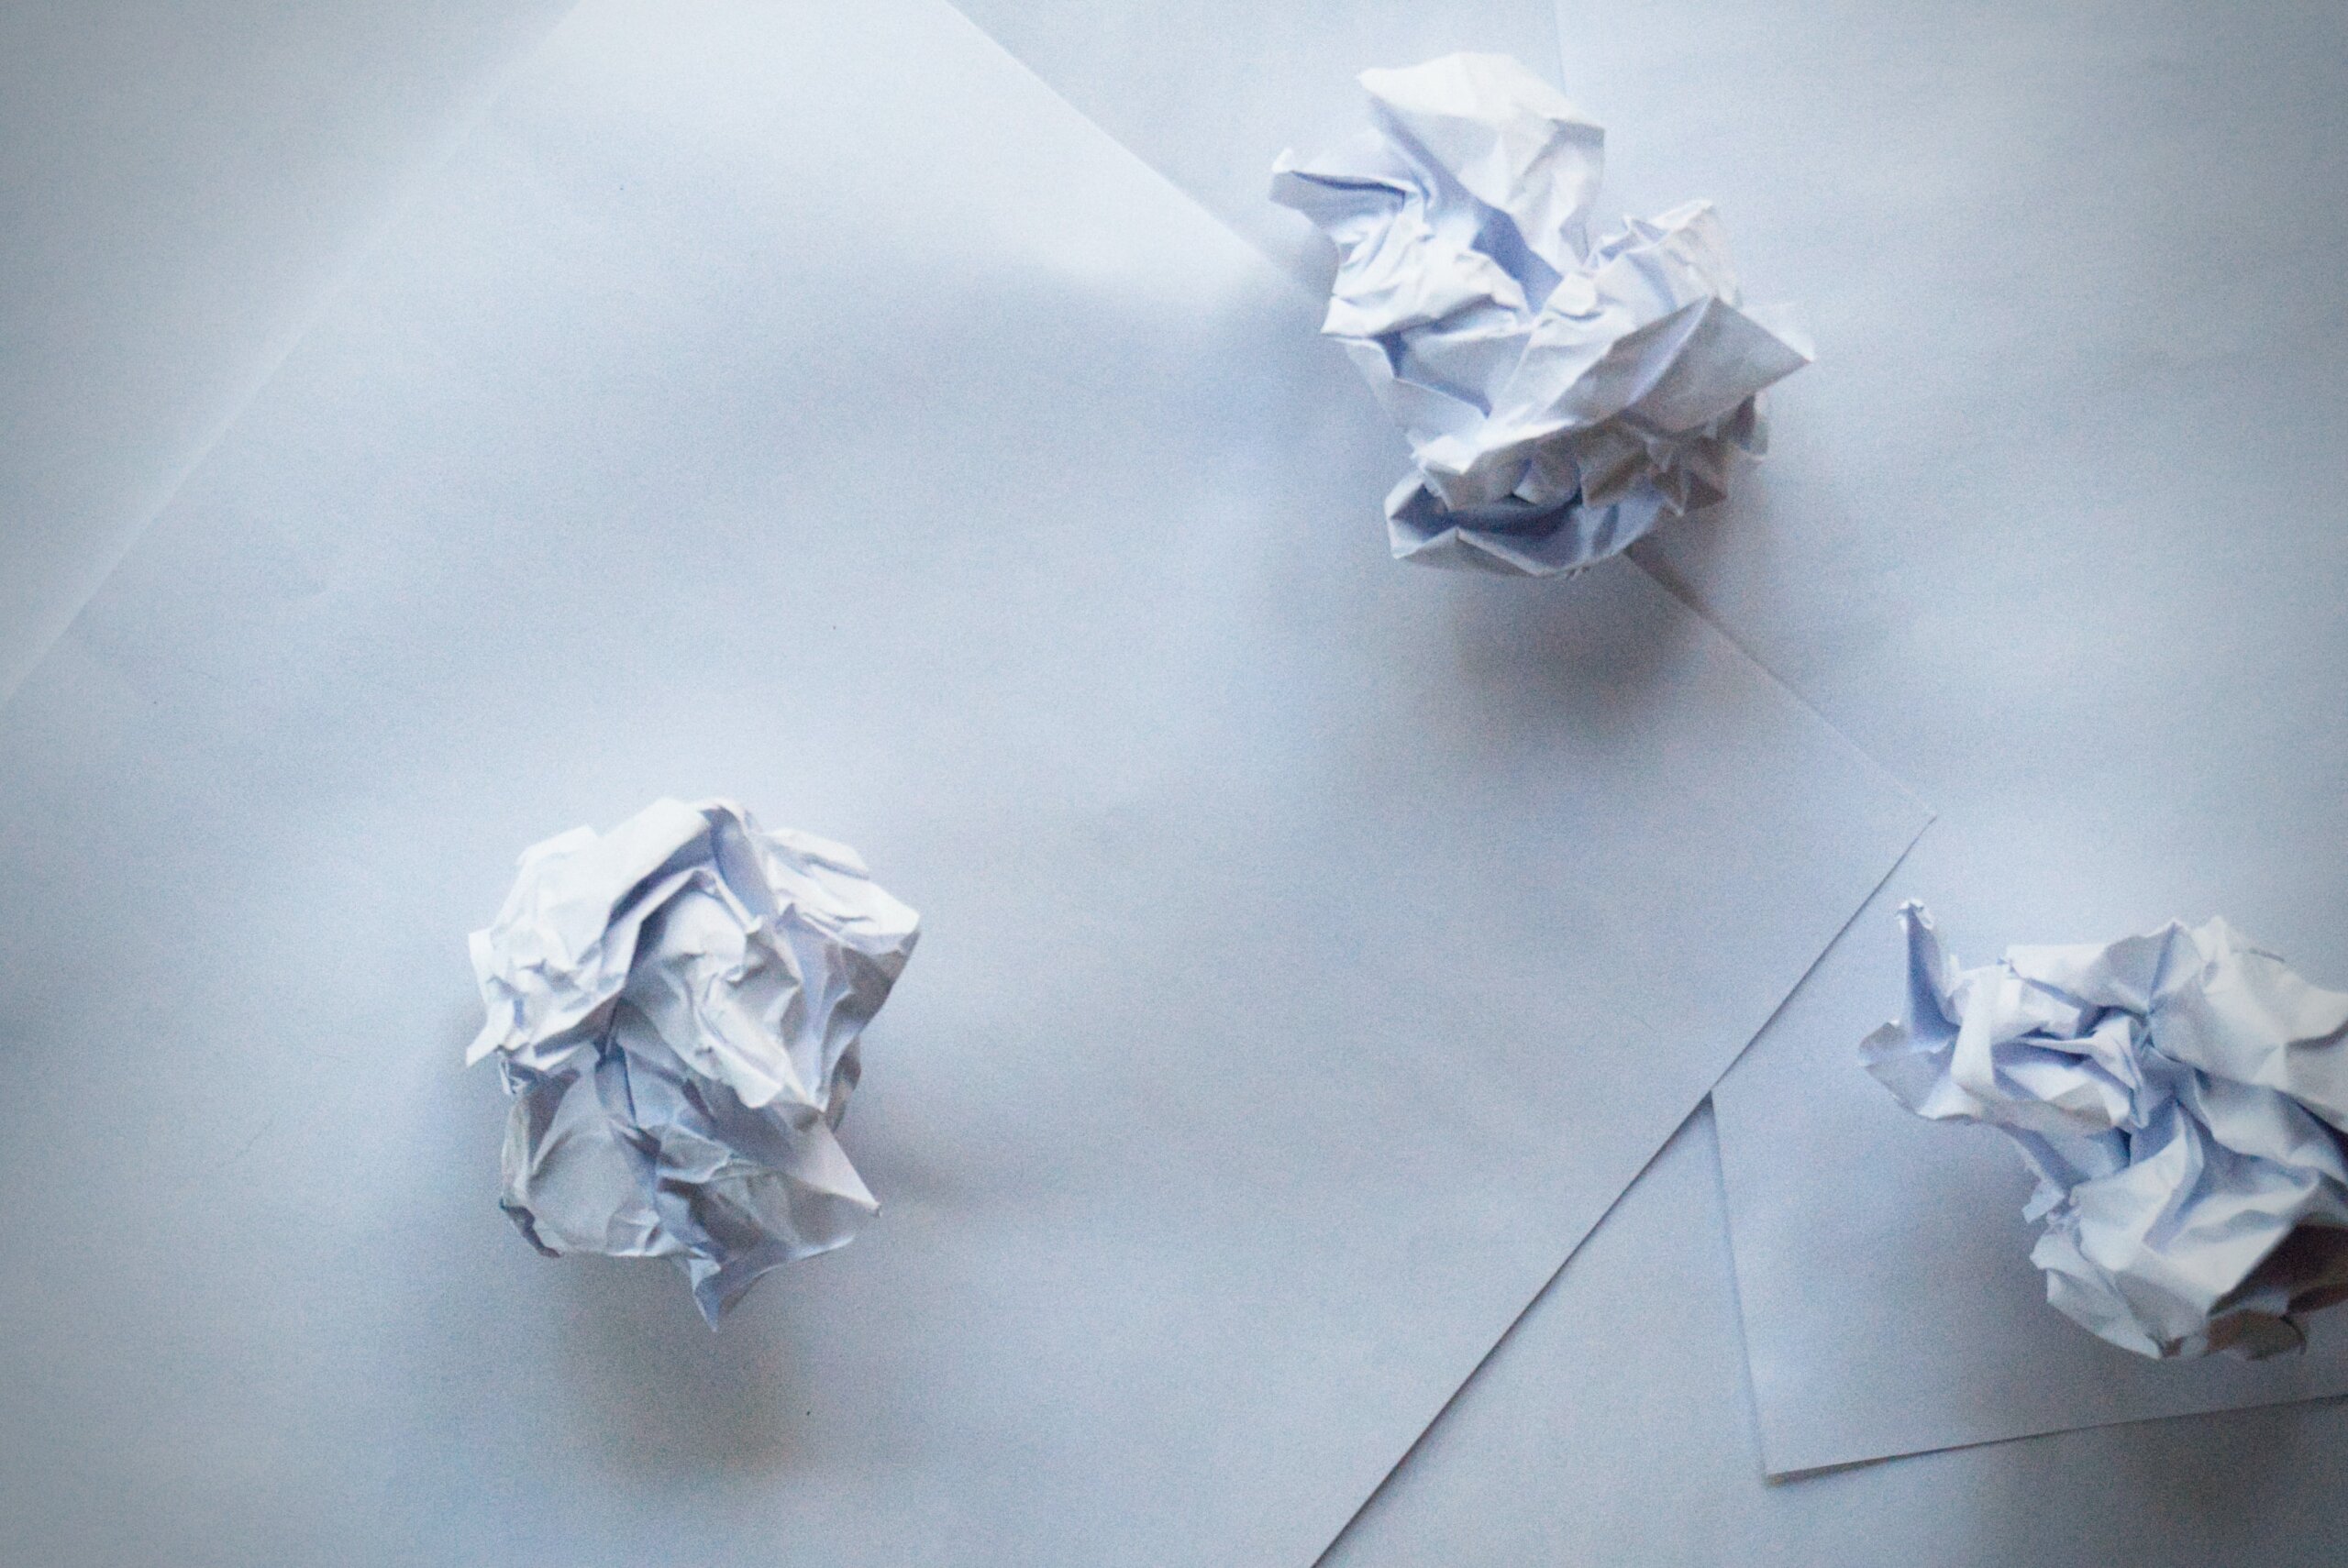 paper shredding business